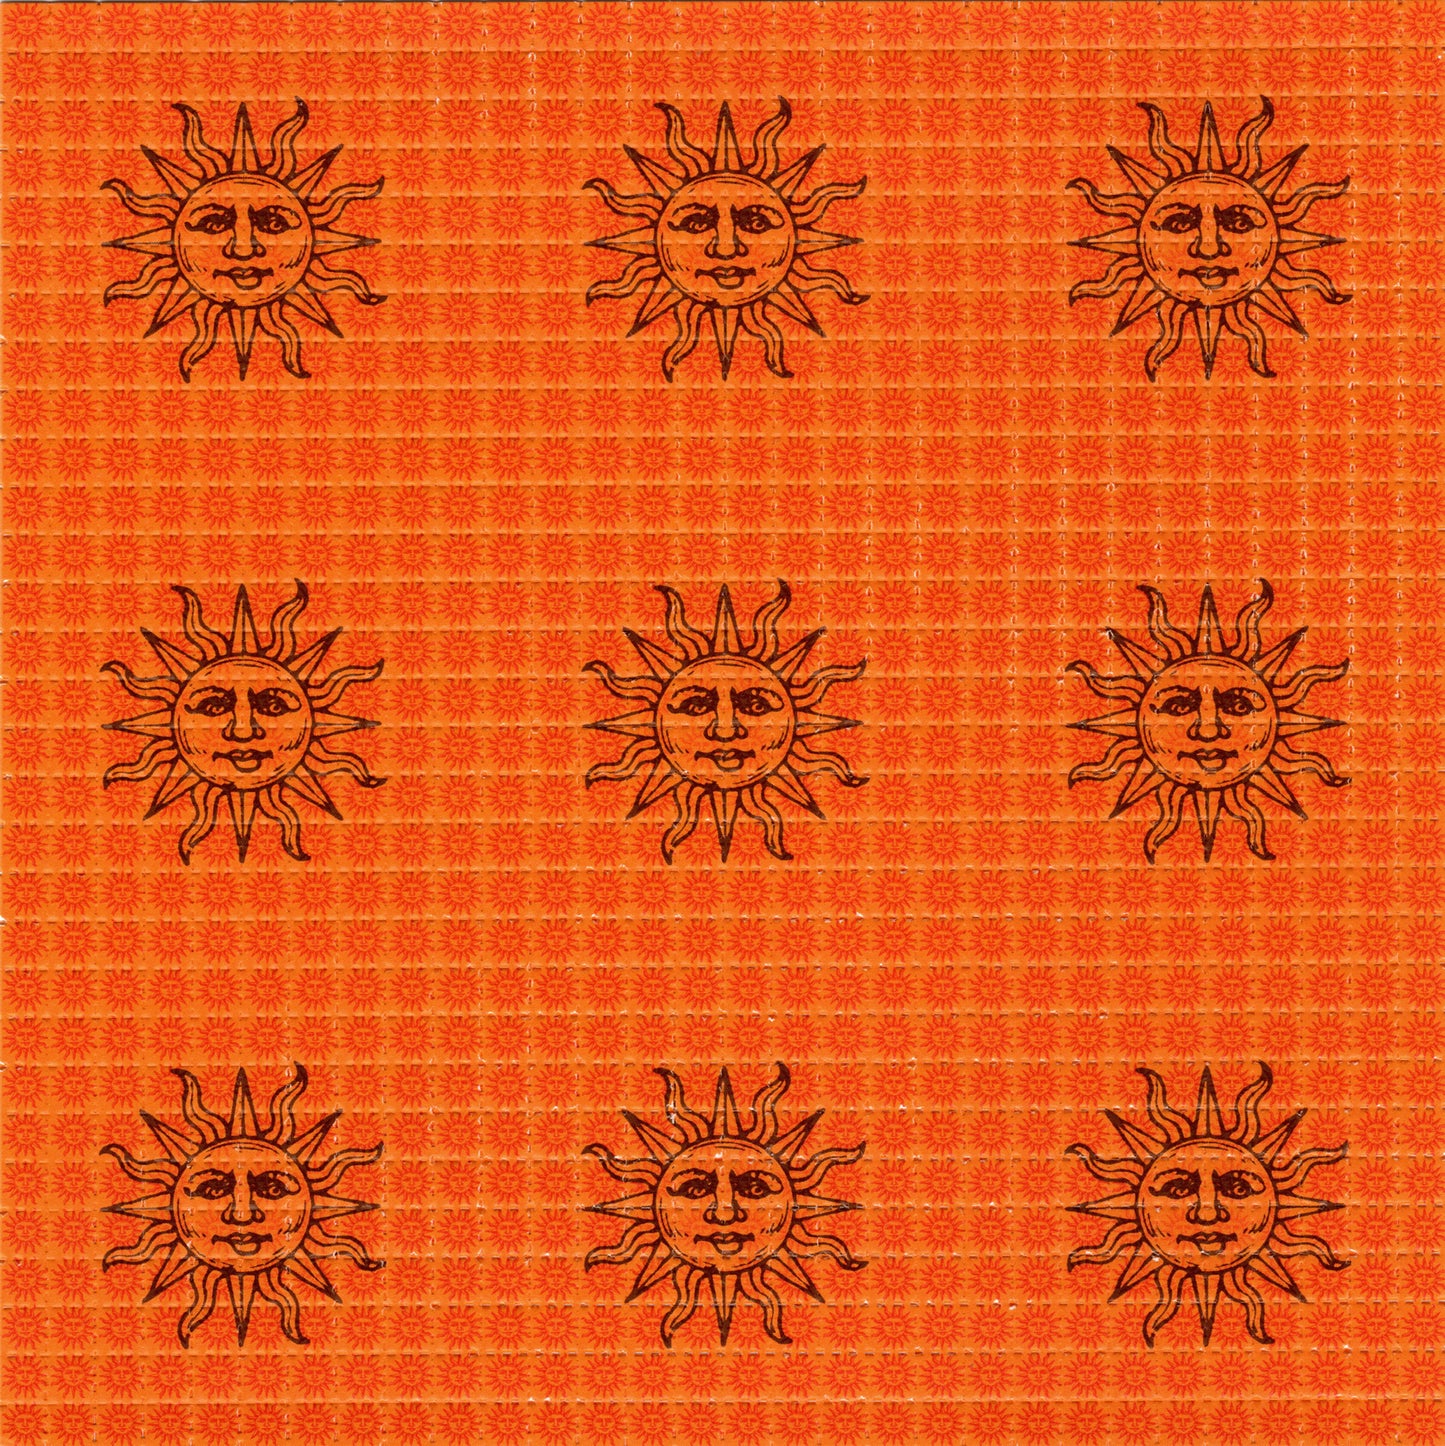 Small Orange Sunshine X9 LSD blotter art print